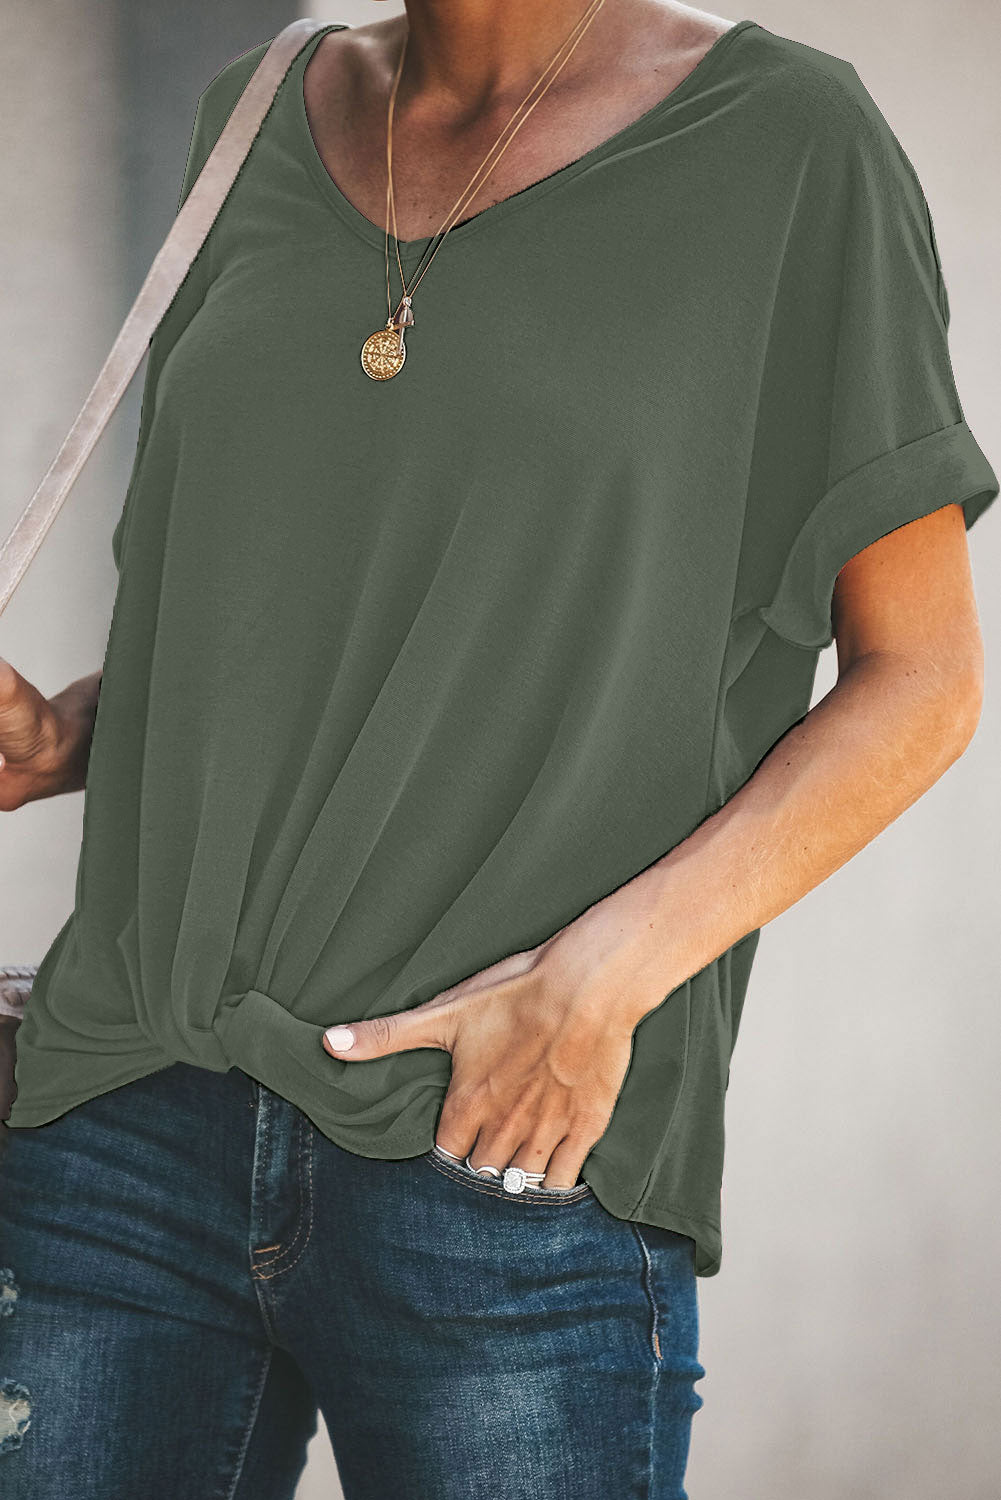 Trendsi Cupid Beauty Supplies Green / S Woman's T-Shirts Plain Twist T-Shirt